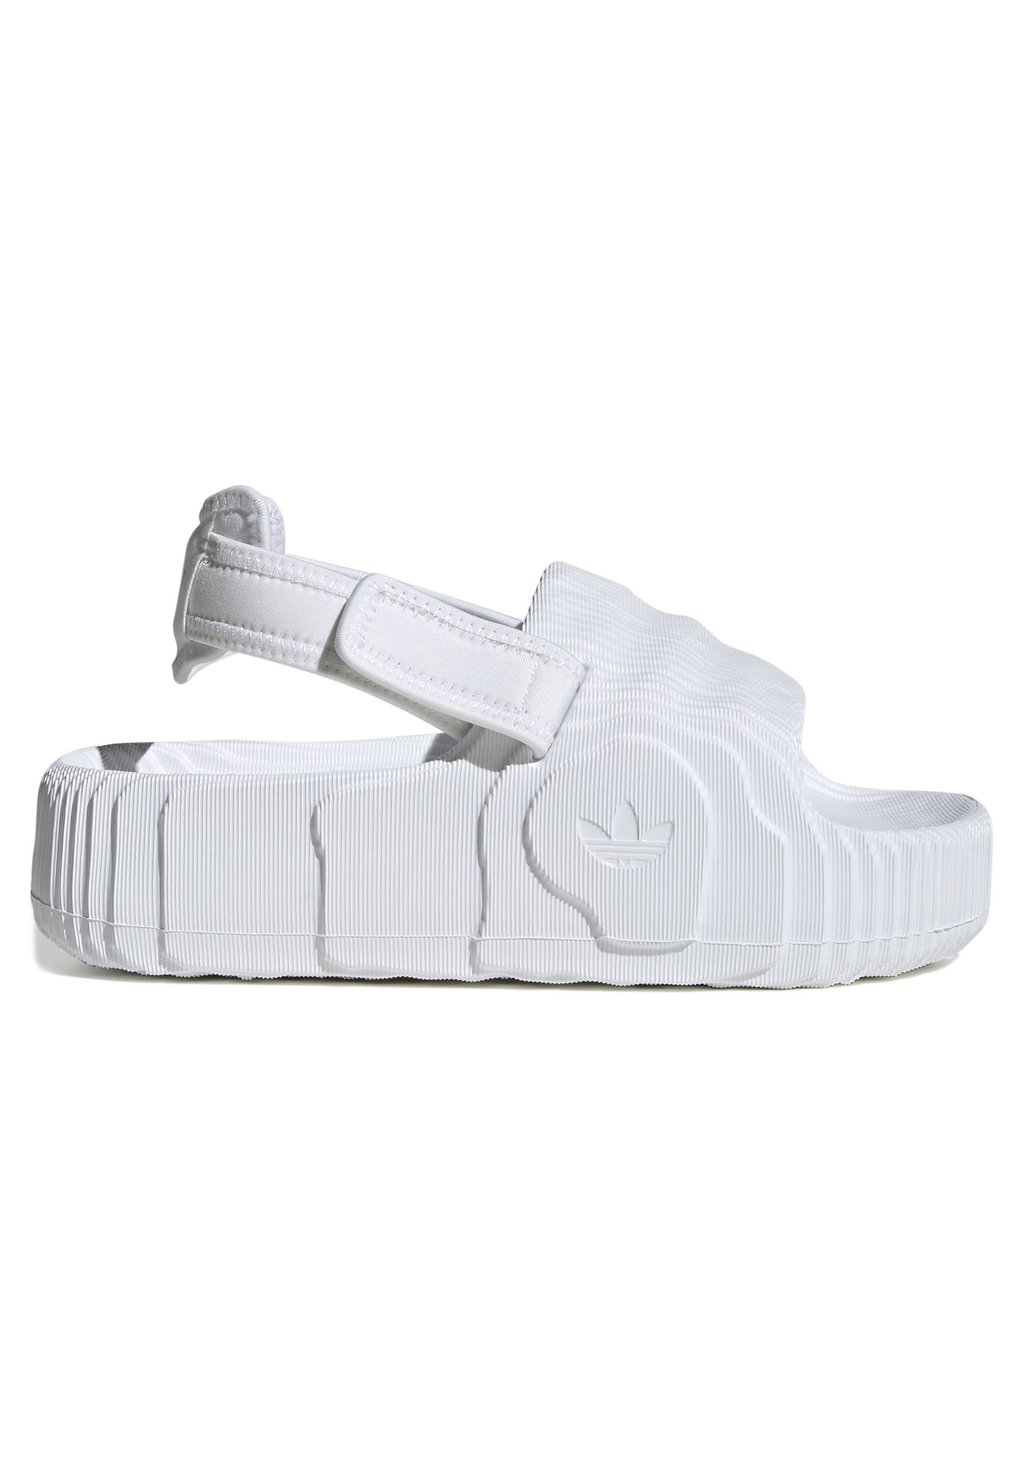 Босоножки на платформе adidas Originals, обувь белая